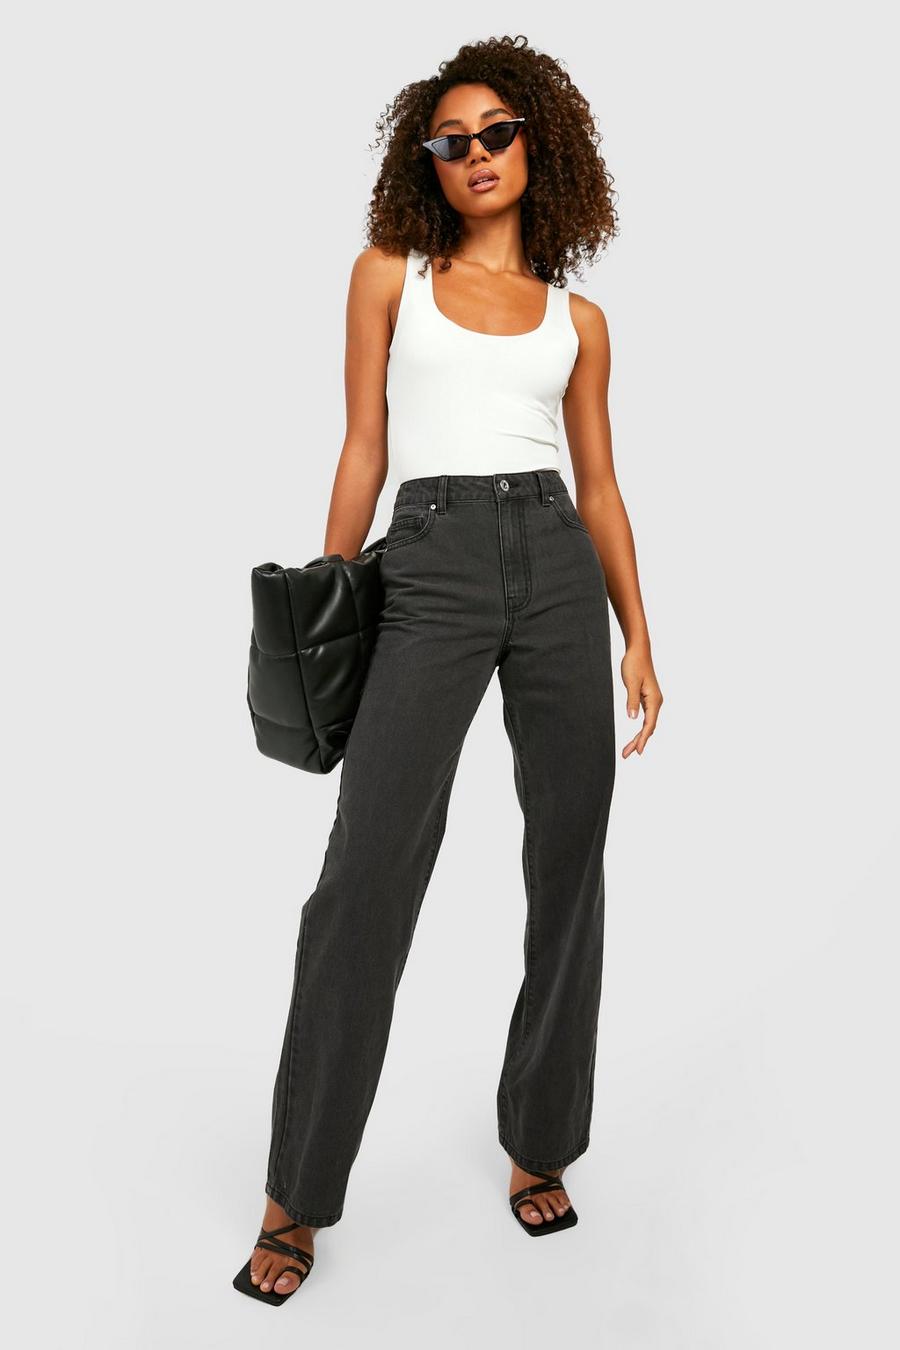 שחור דהוי מכנסי ג'ינס בגזרת בויפרנד משוחררת Low Rise, לנשים גבוהות